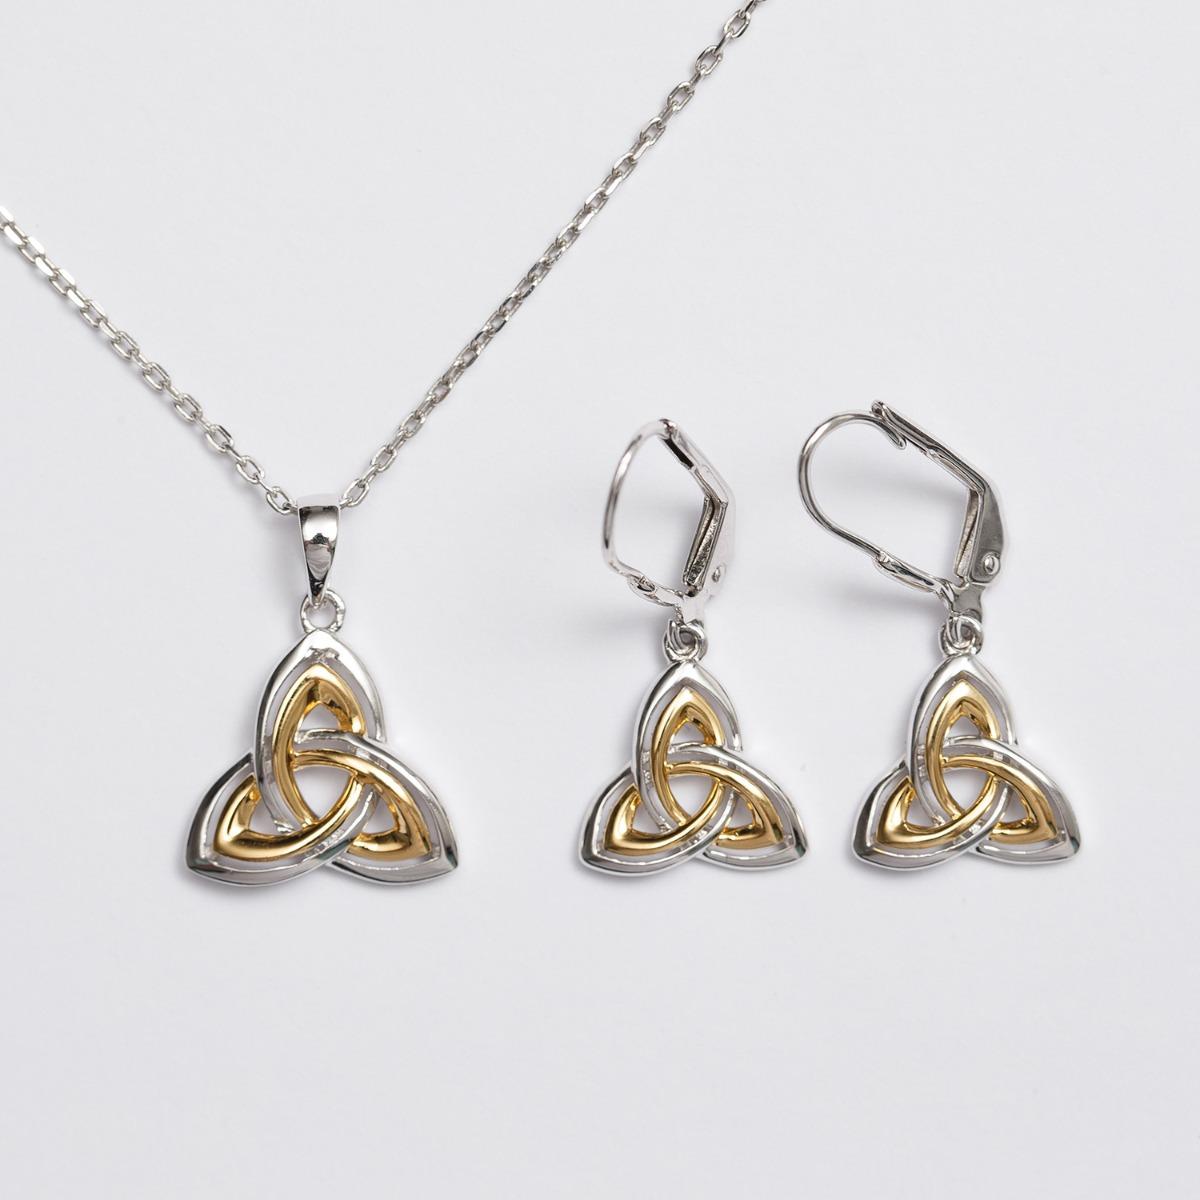 Trinity knot jewelry set